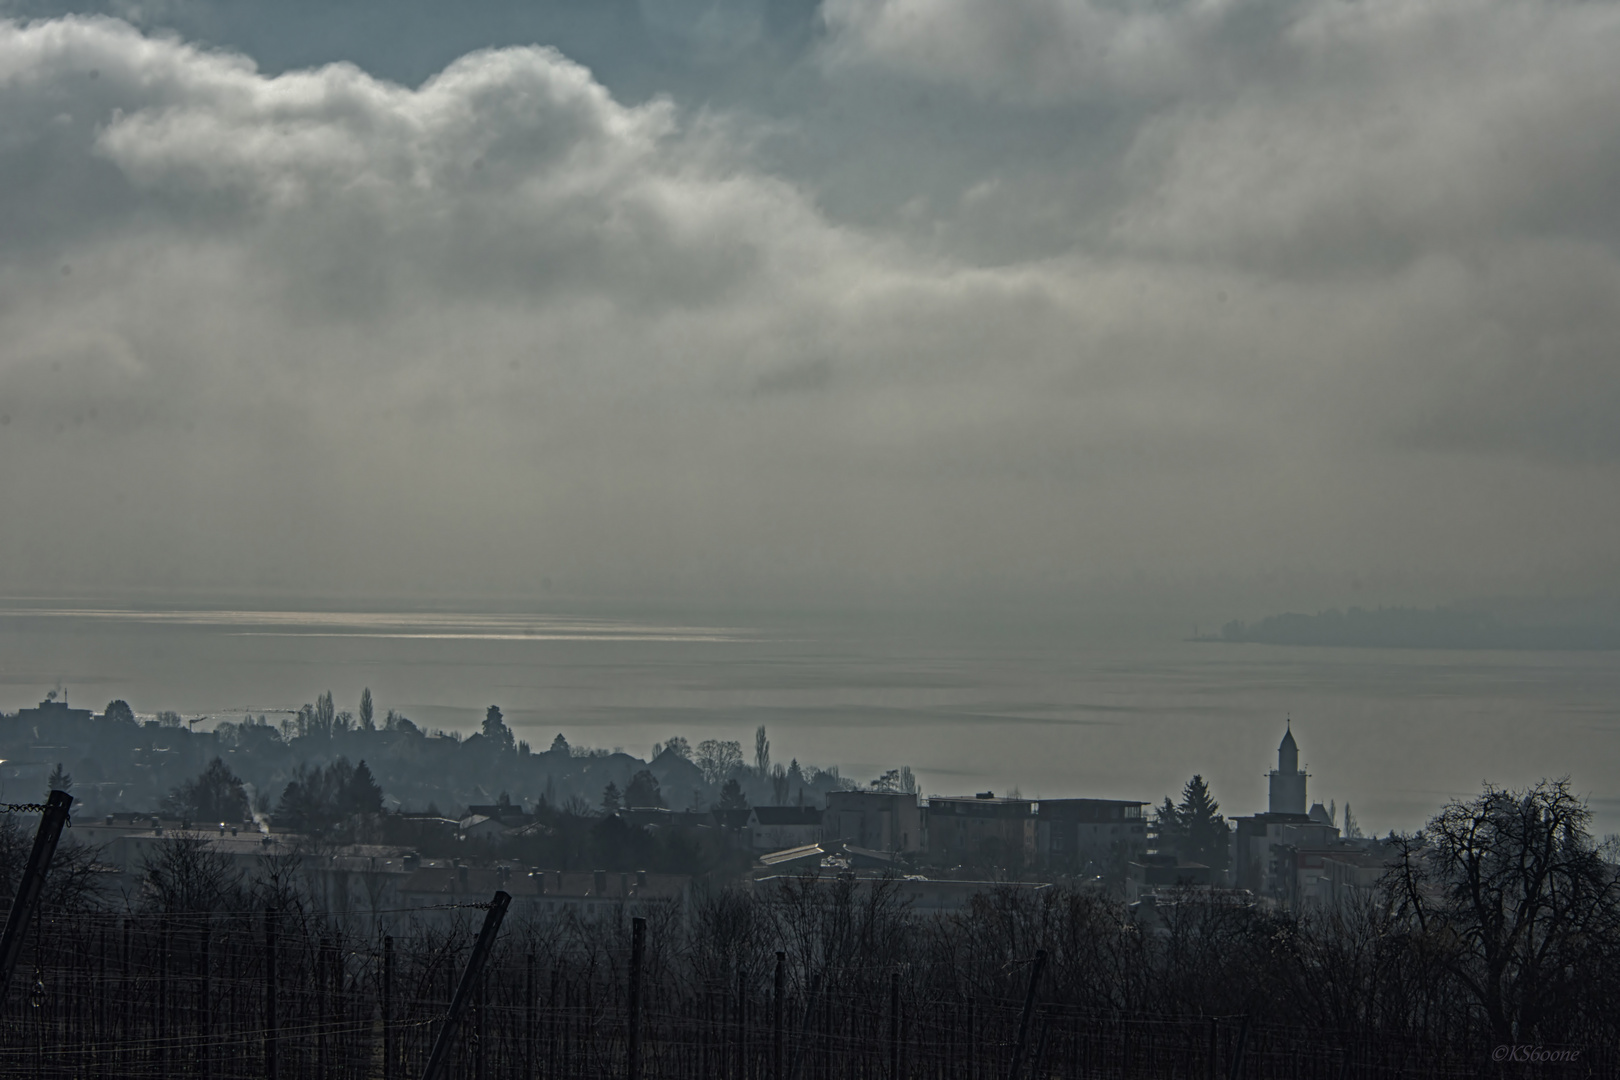 ... Nebel über dem Bodensee in Überlingen / fog over the lake of constance ...